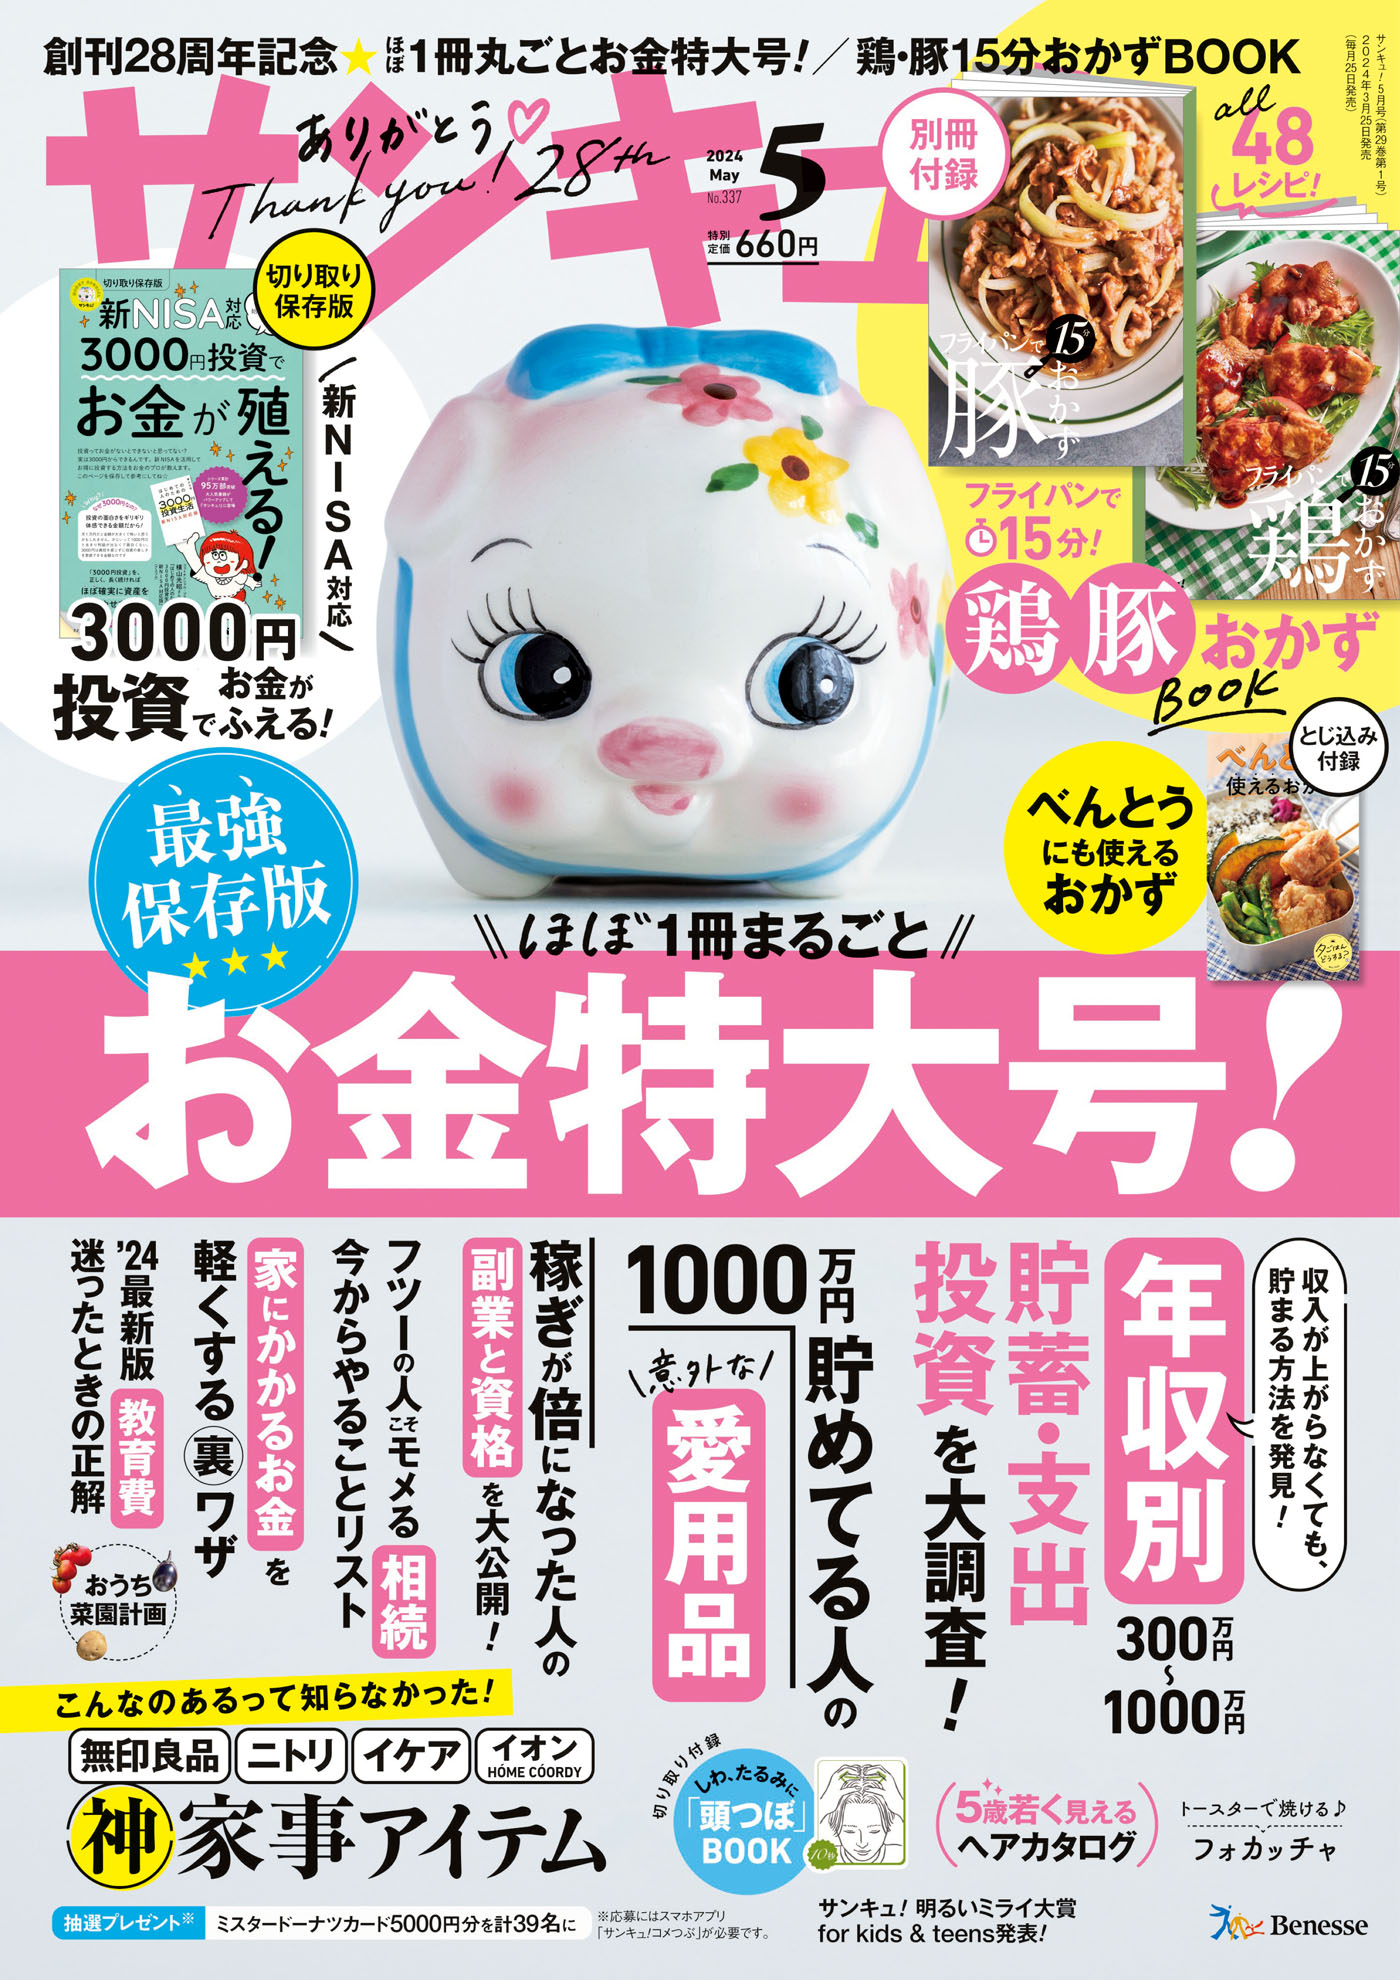 38,999円天然生活 雑誌 一冊300円